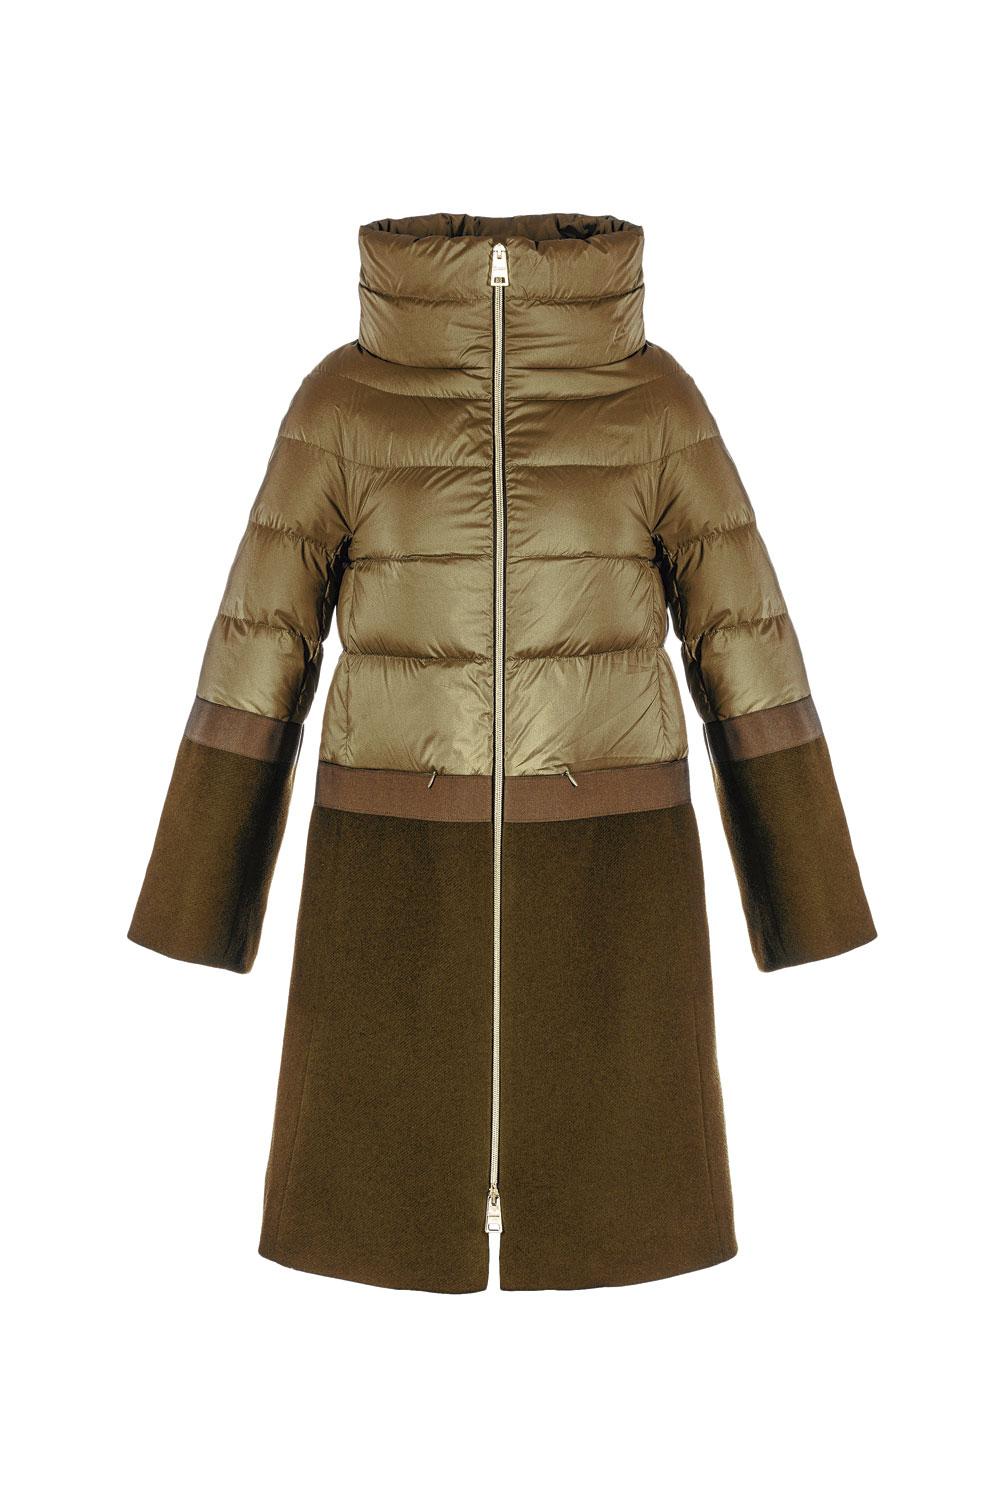 Manteau en duvet à empiècements contrastants en laine mélangée, Herno, 820 euros